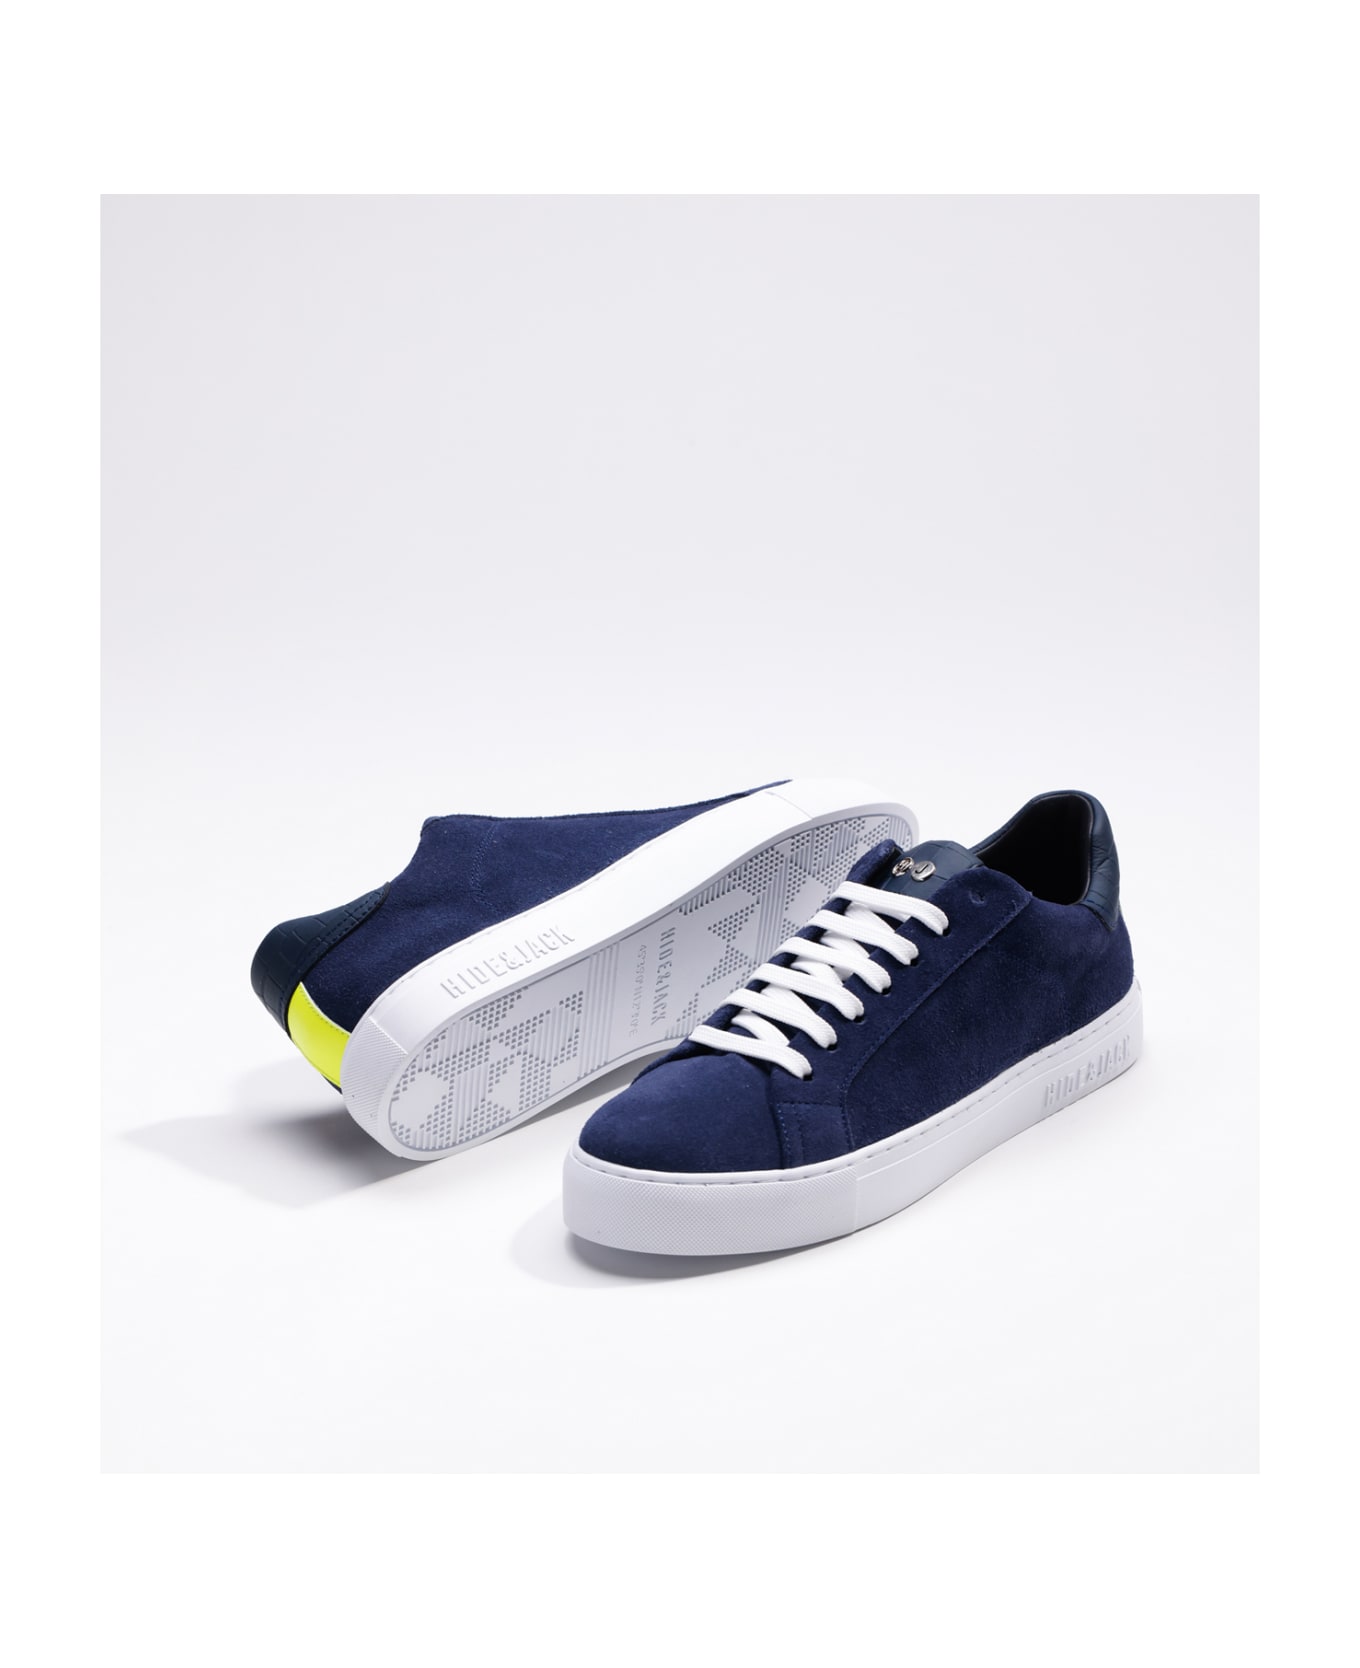 Hide&Jack Low Top Sneaker - Essence Oil Blue White